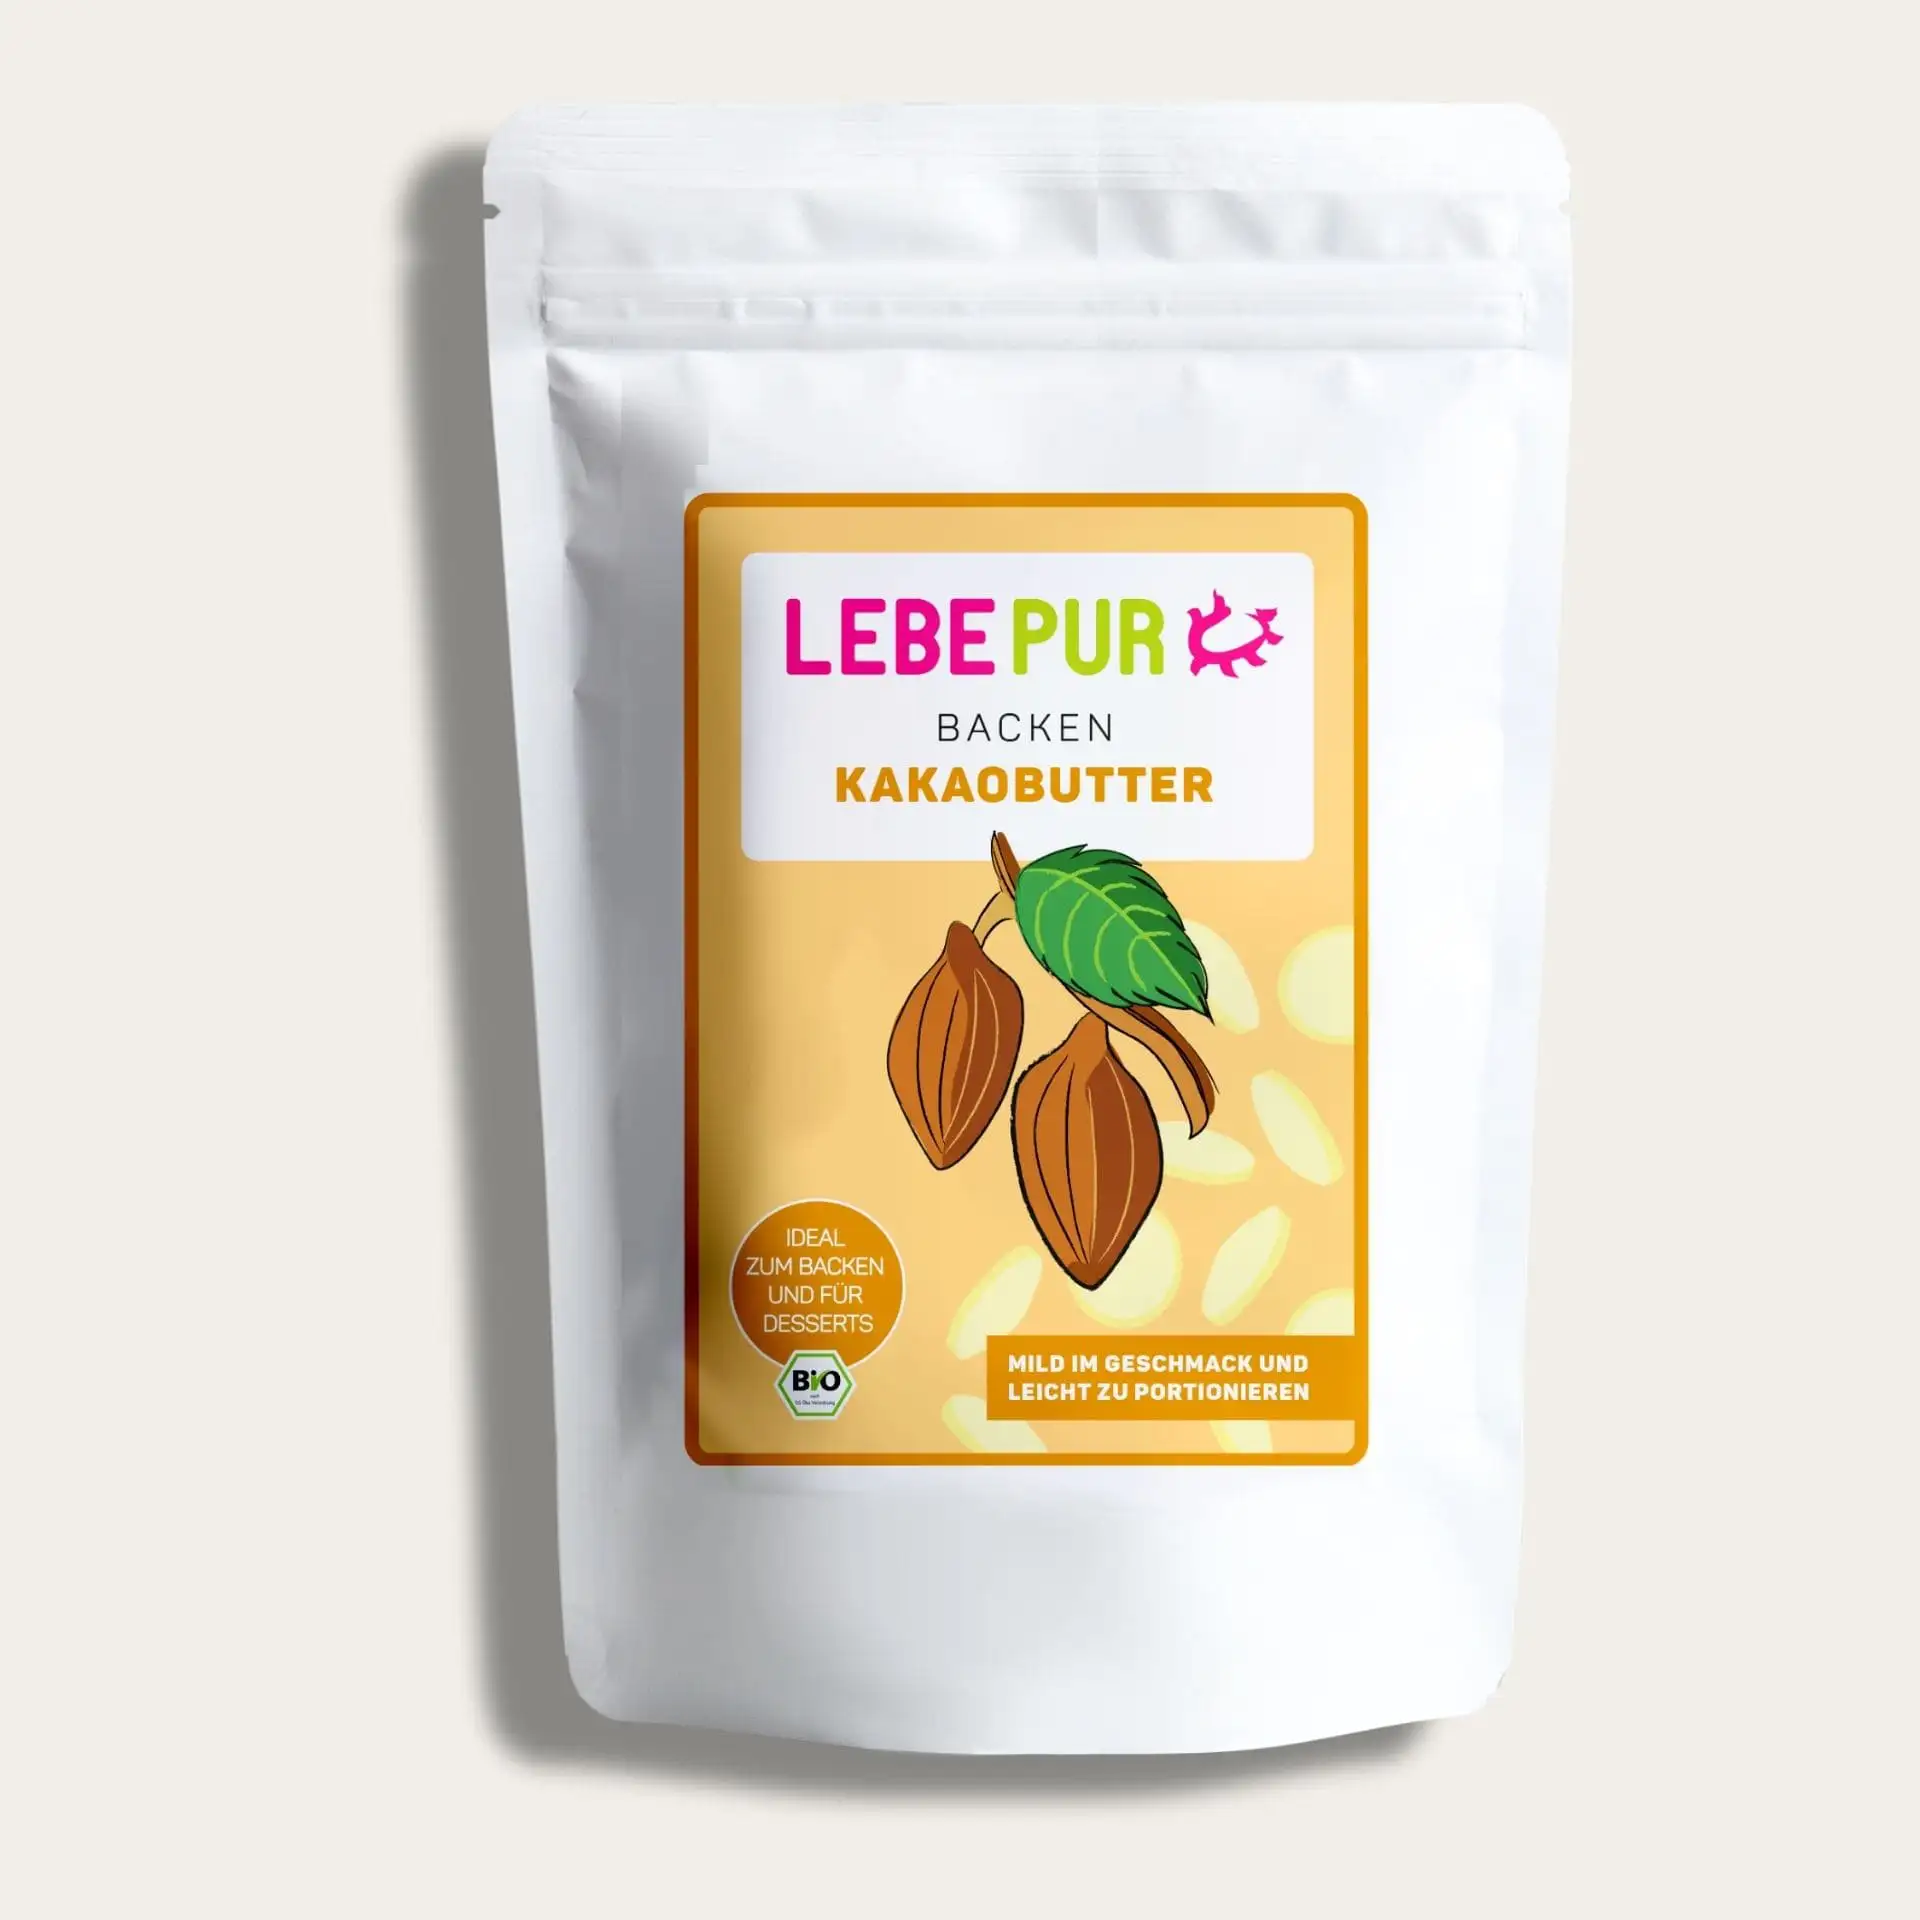 Bio Kakaobutter Beutel - Hochwertige Zutat für kulinarische Köstlichkeiten. Vegan und vielseitig einsetzbar.